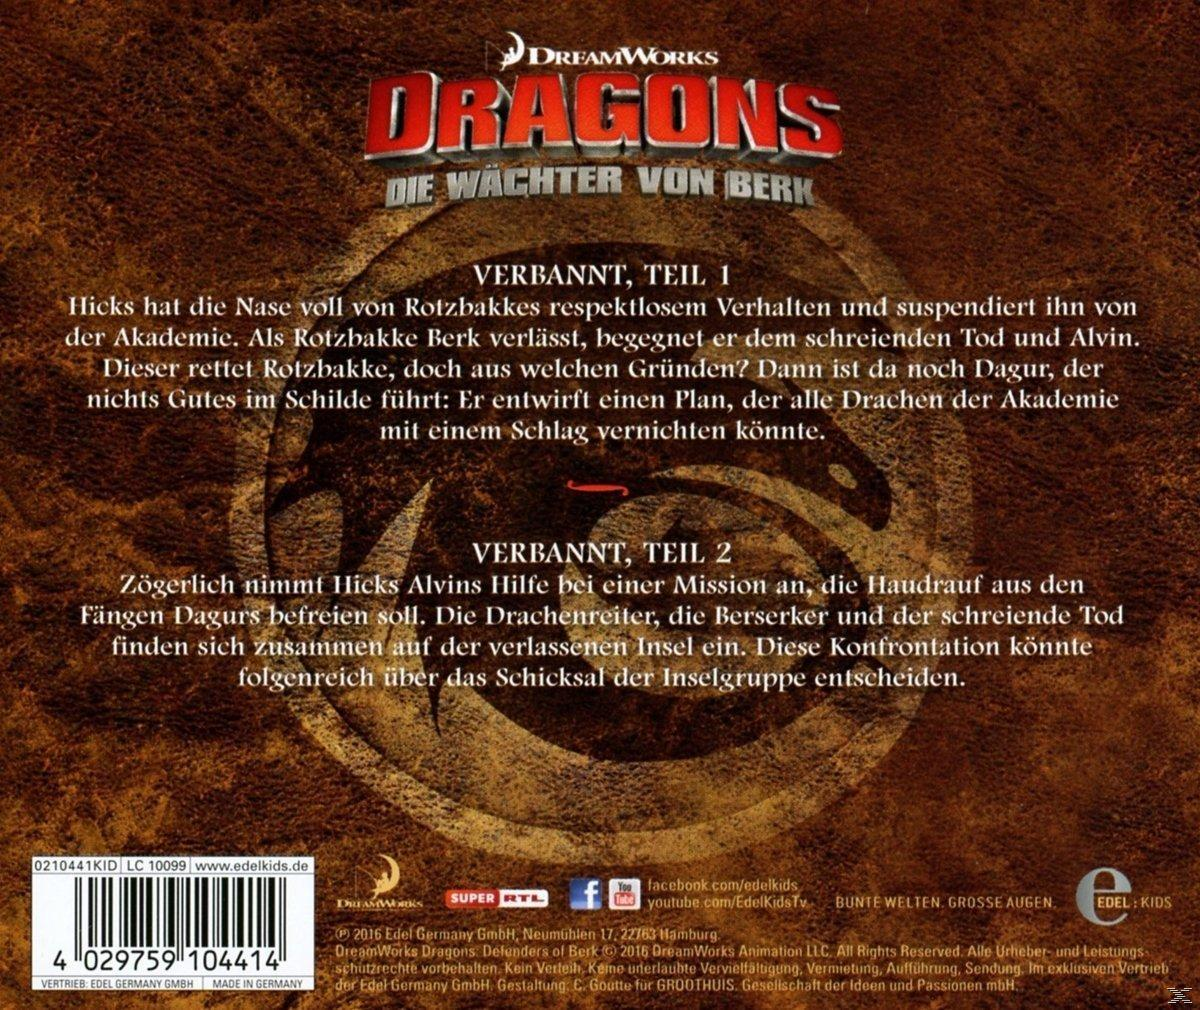 Z.Tv-Serie-Drachentausch (CD) Berk Hörspiel - - Wächter Dragons-die Von (18)Original